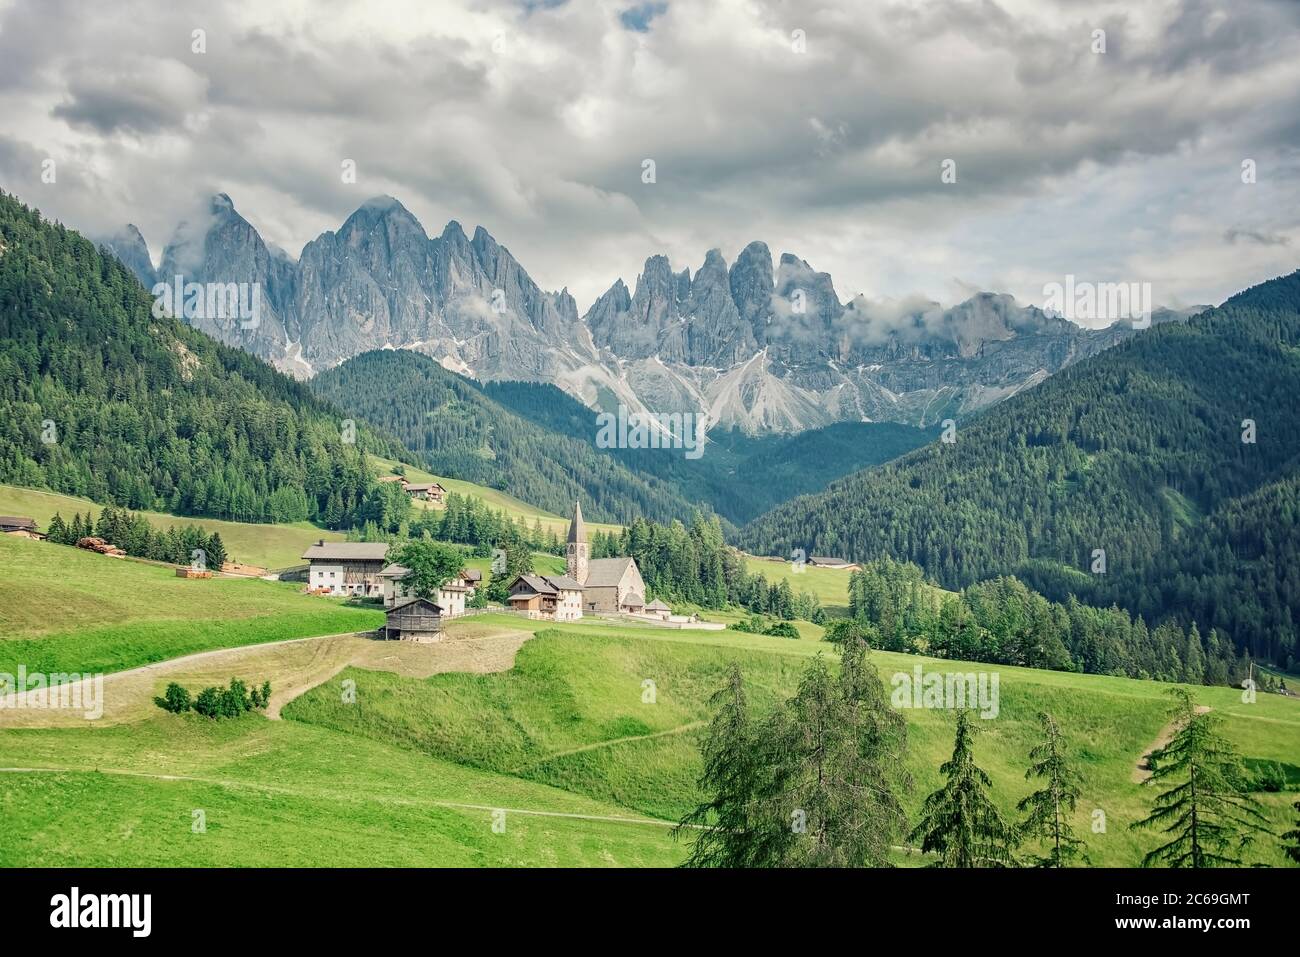 Santa Maddalena Dorf mit wunderschönen Dolomiten Berge im Hintergrund, Val di Funes Tal, Italien Stockfoto